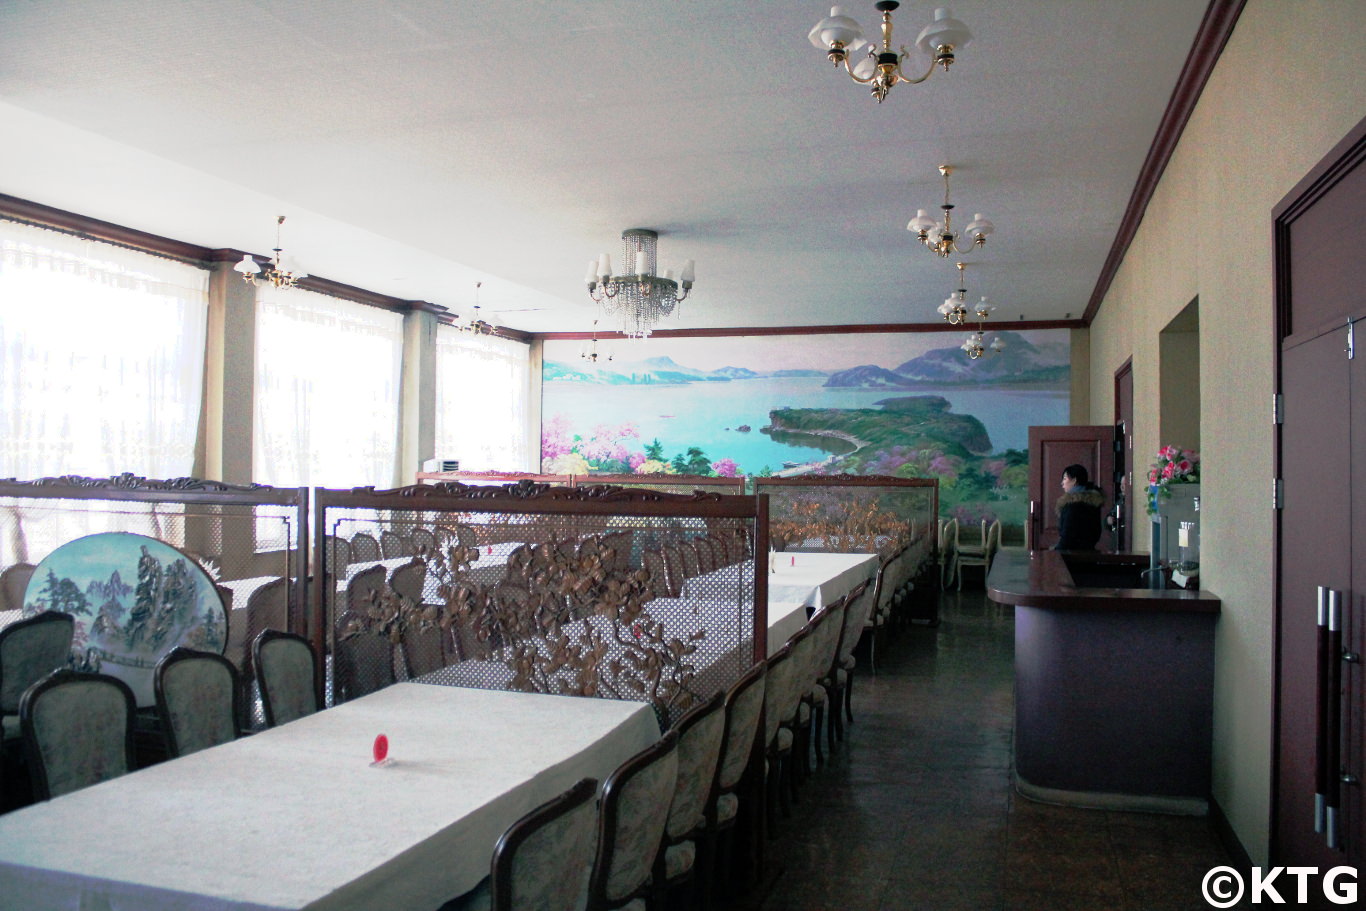 Pintura mural en el salón de banquetes del 8 de marzo en Sariwon, Corea del Norte, RPDC. Fotografía tomada por KTG Tours. Este es un hotel de tercera clase. Sariwon es la capital provincial de la provincia de North Hwanghae